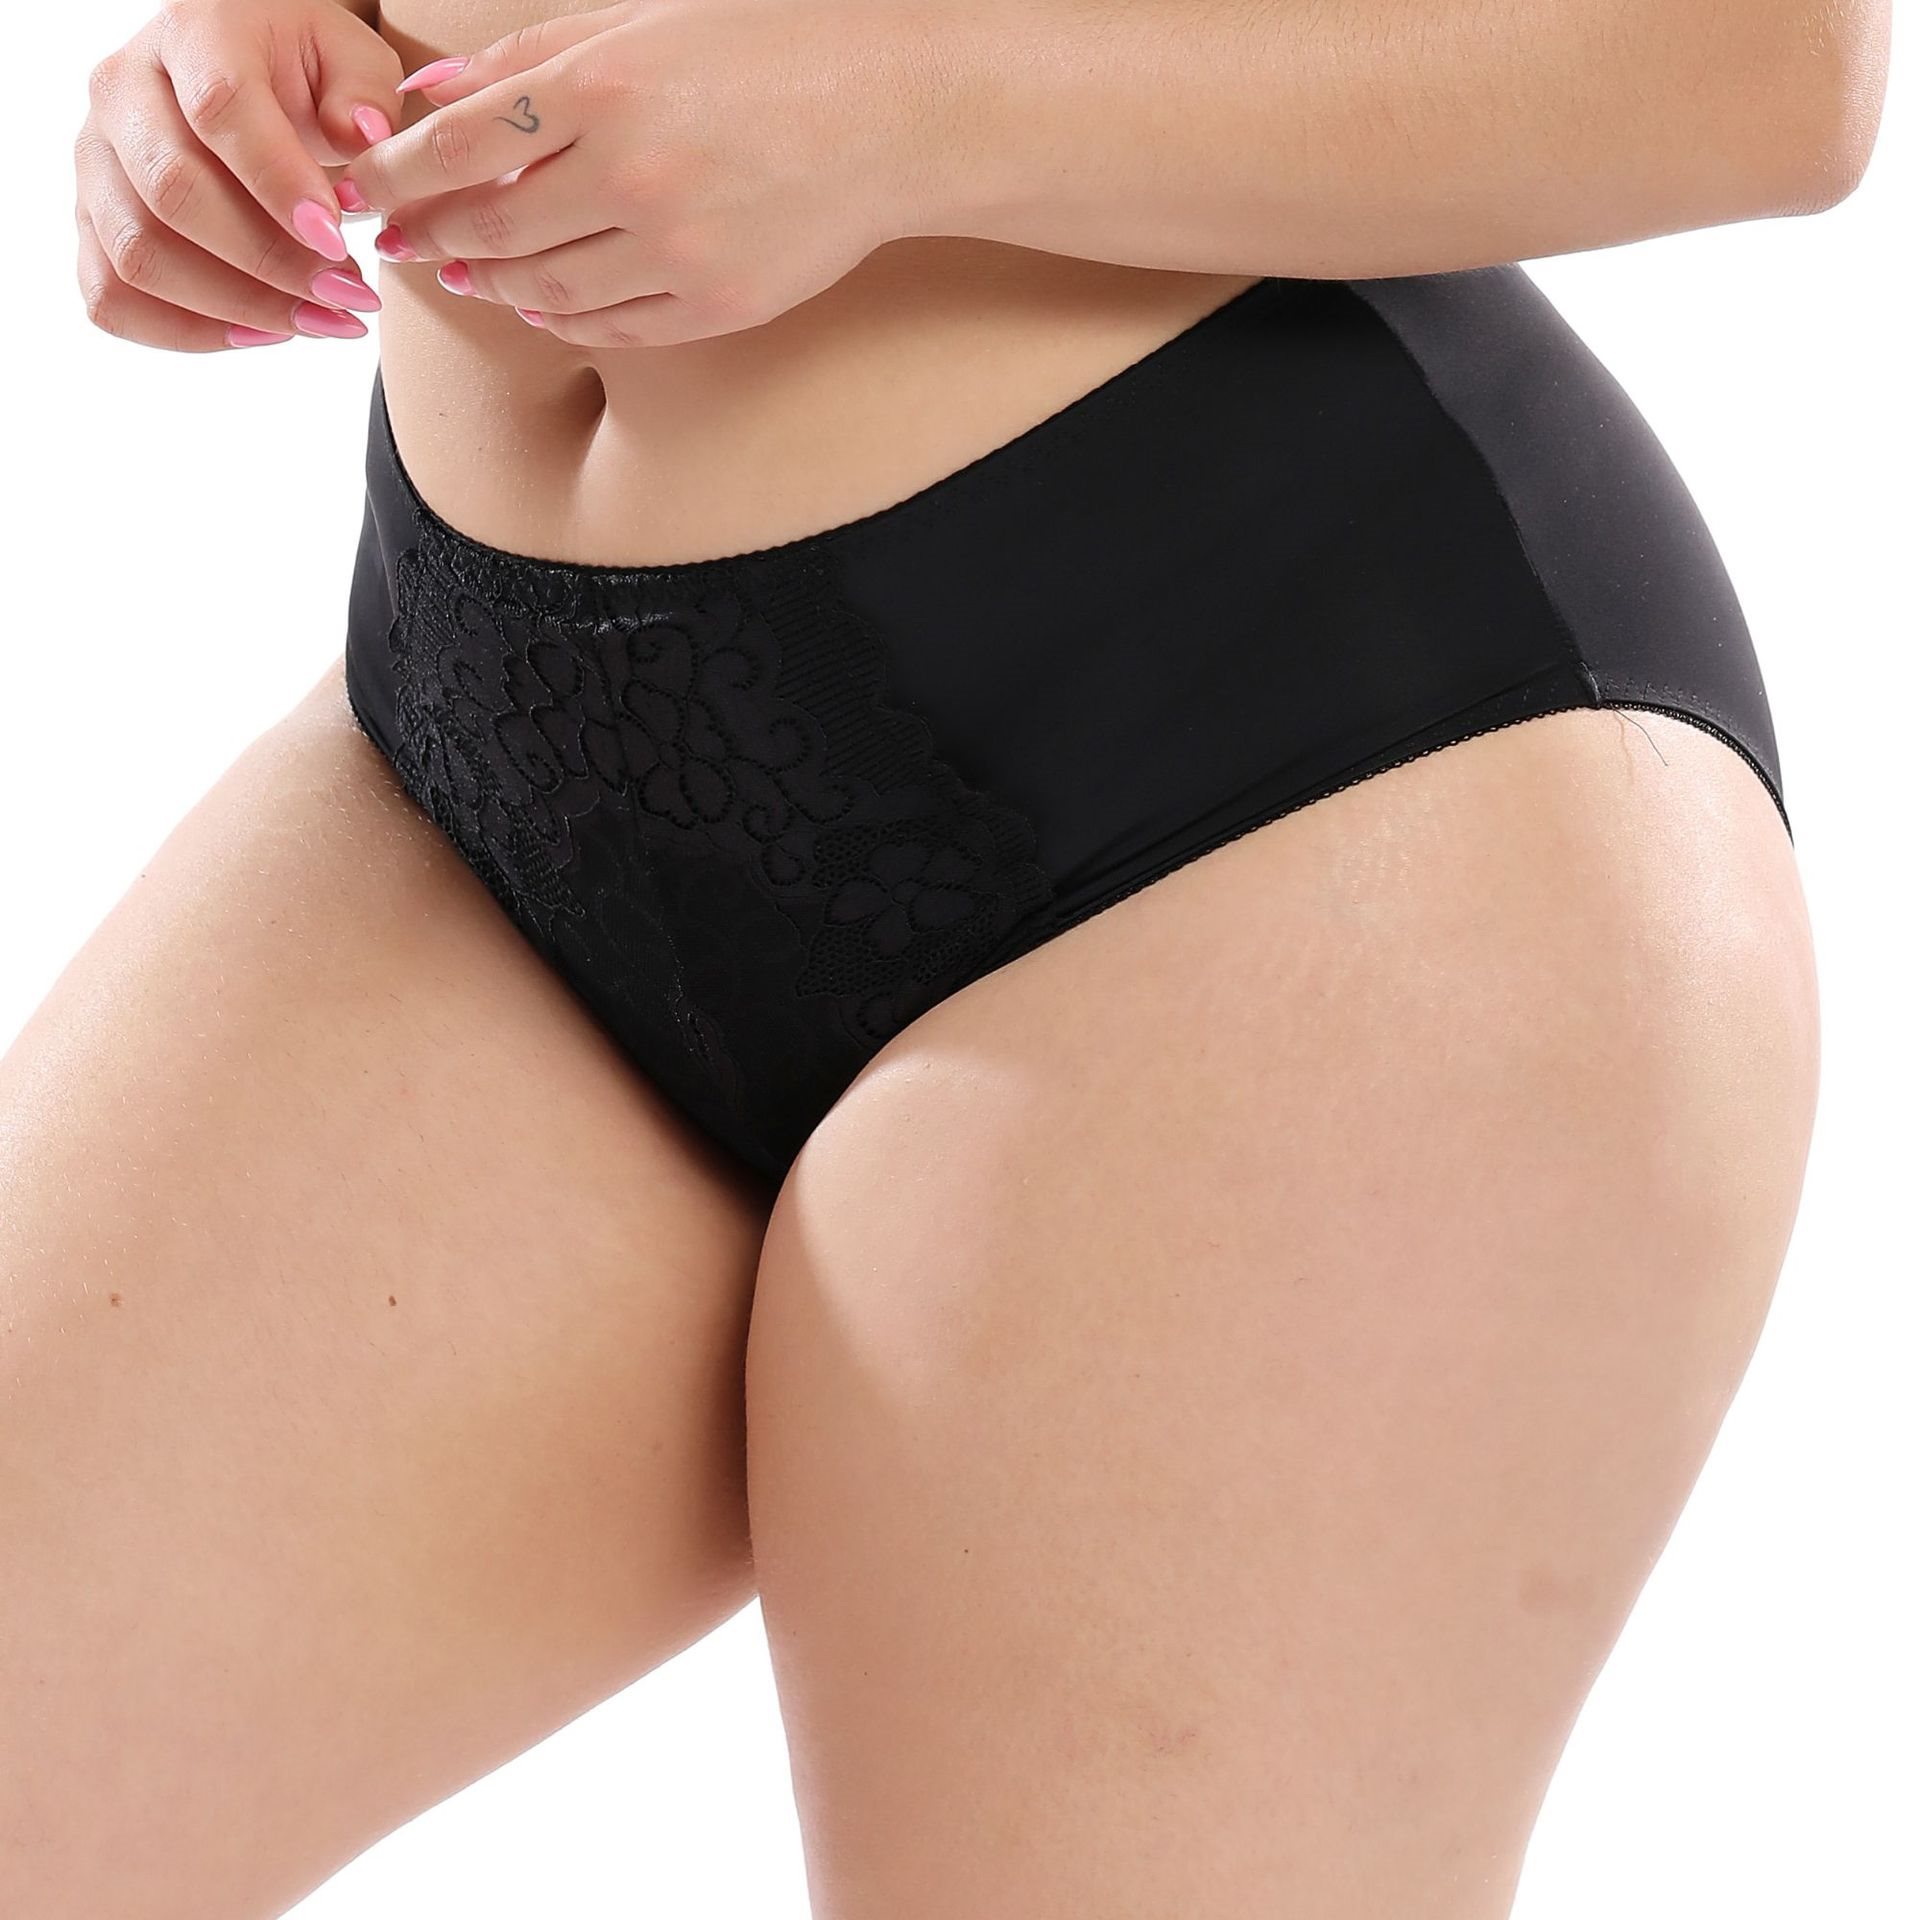 Plus-size women's underwear cute lace high waist briefs